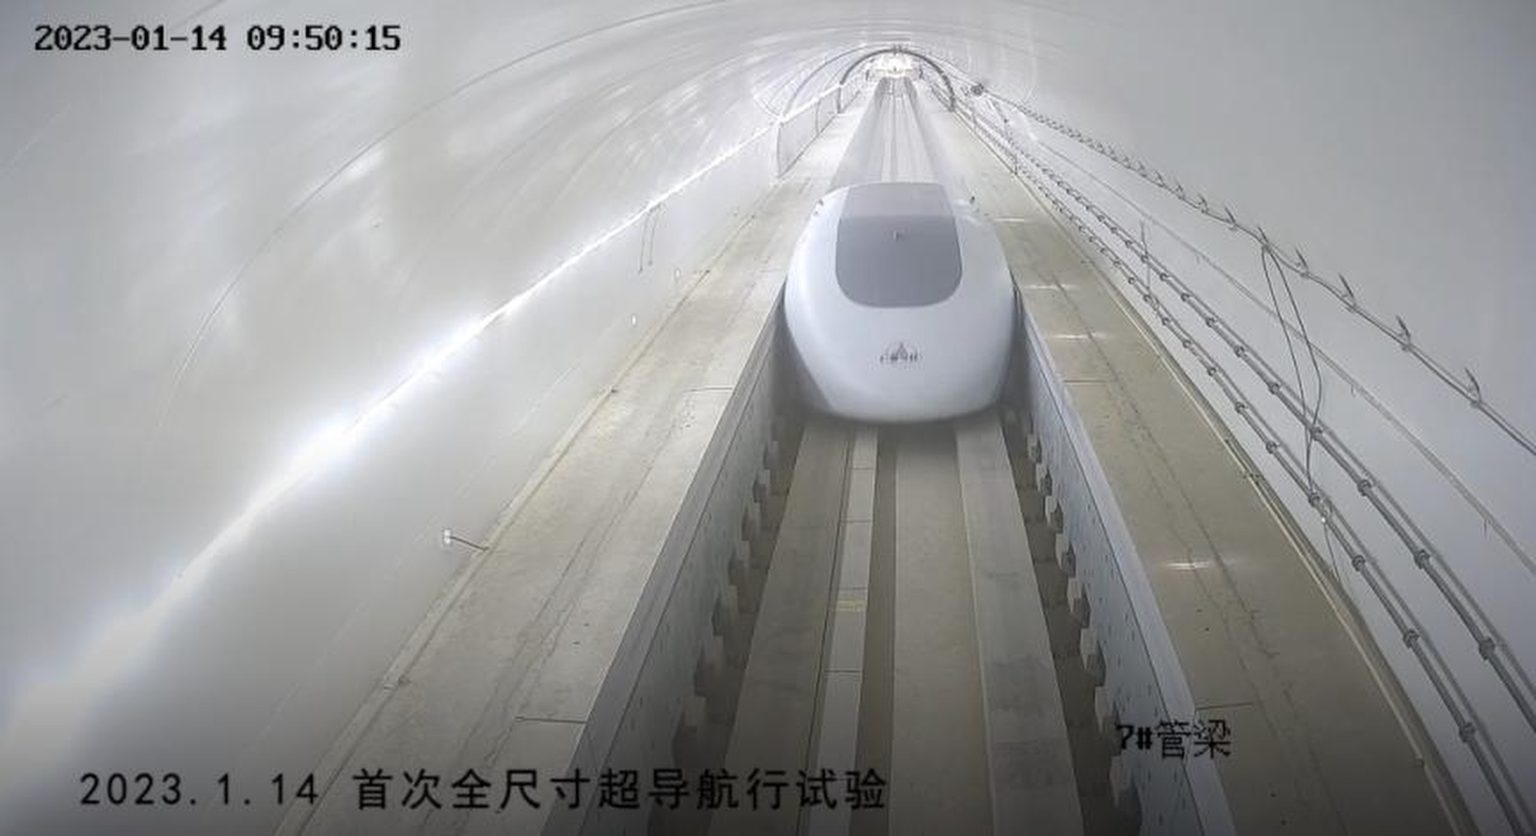 هایپرلوپ فوق سریع چین، سریعترین قطار جهان شد